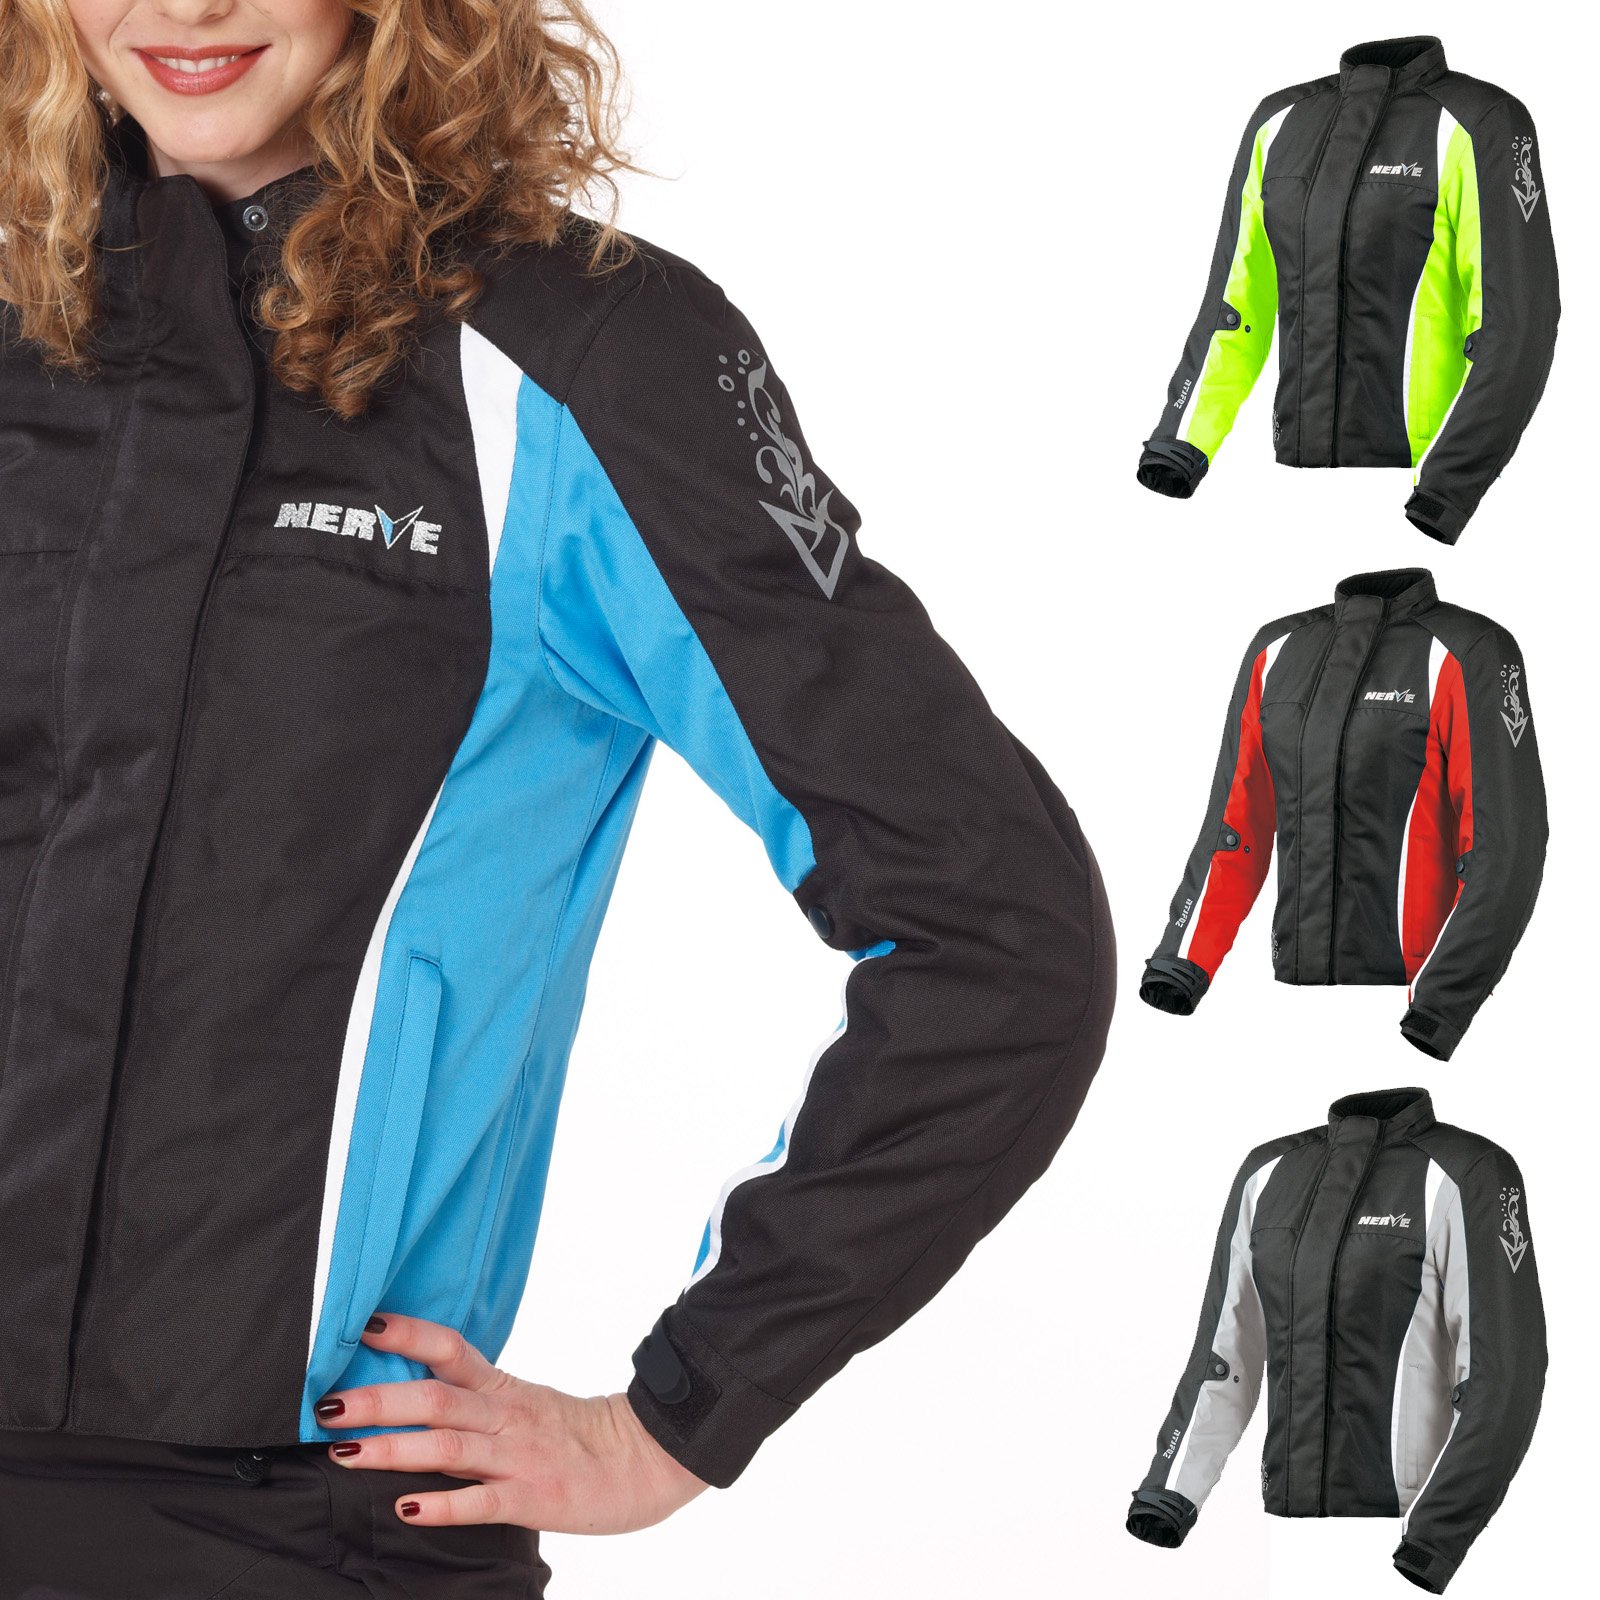 Nerve Shop Motorradjacke -Unique- Motorrad Damen Wasserdicht Jacke mit Protektoren Sommer Winter Textil Frauen - schwarz-blau - 46